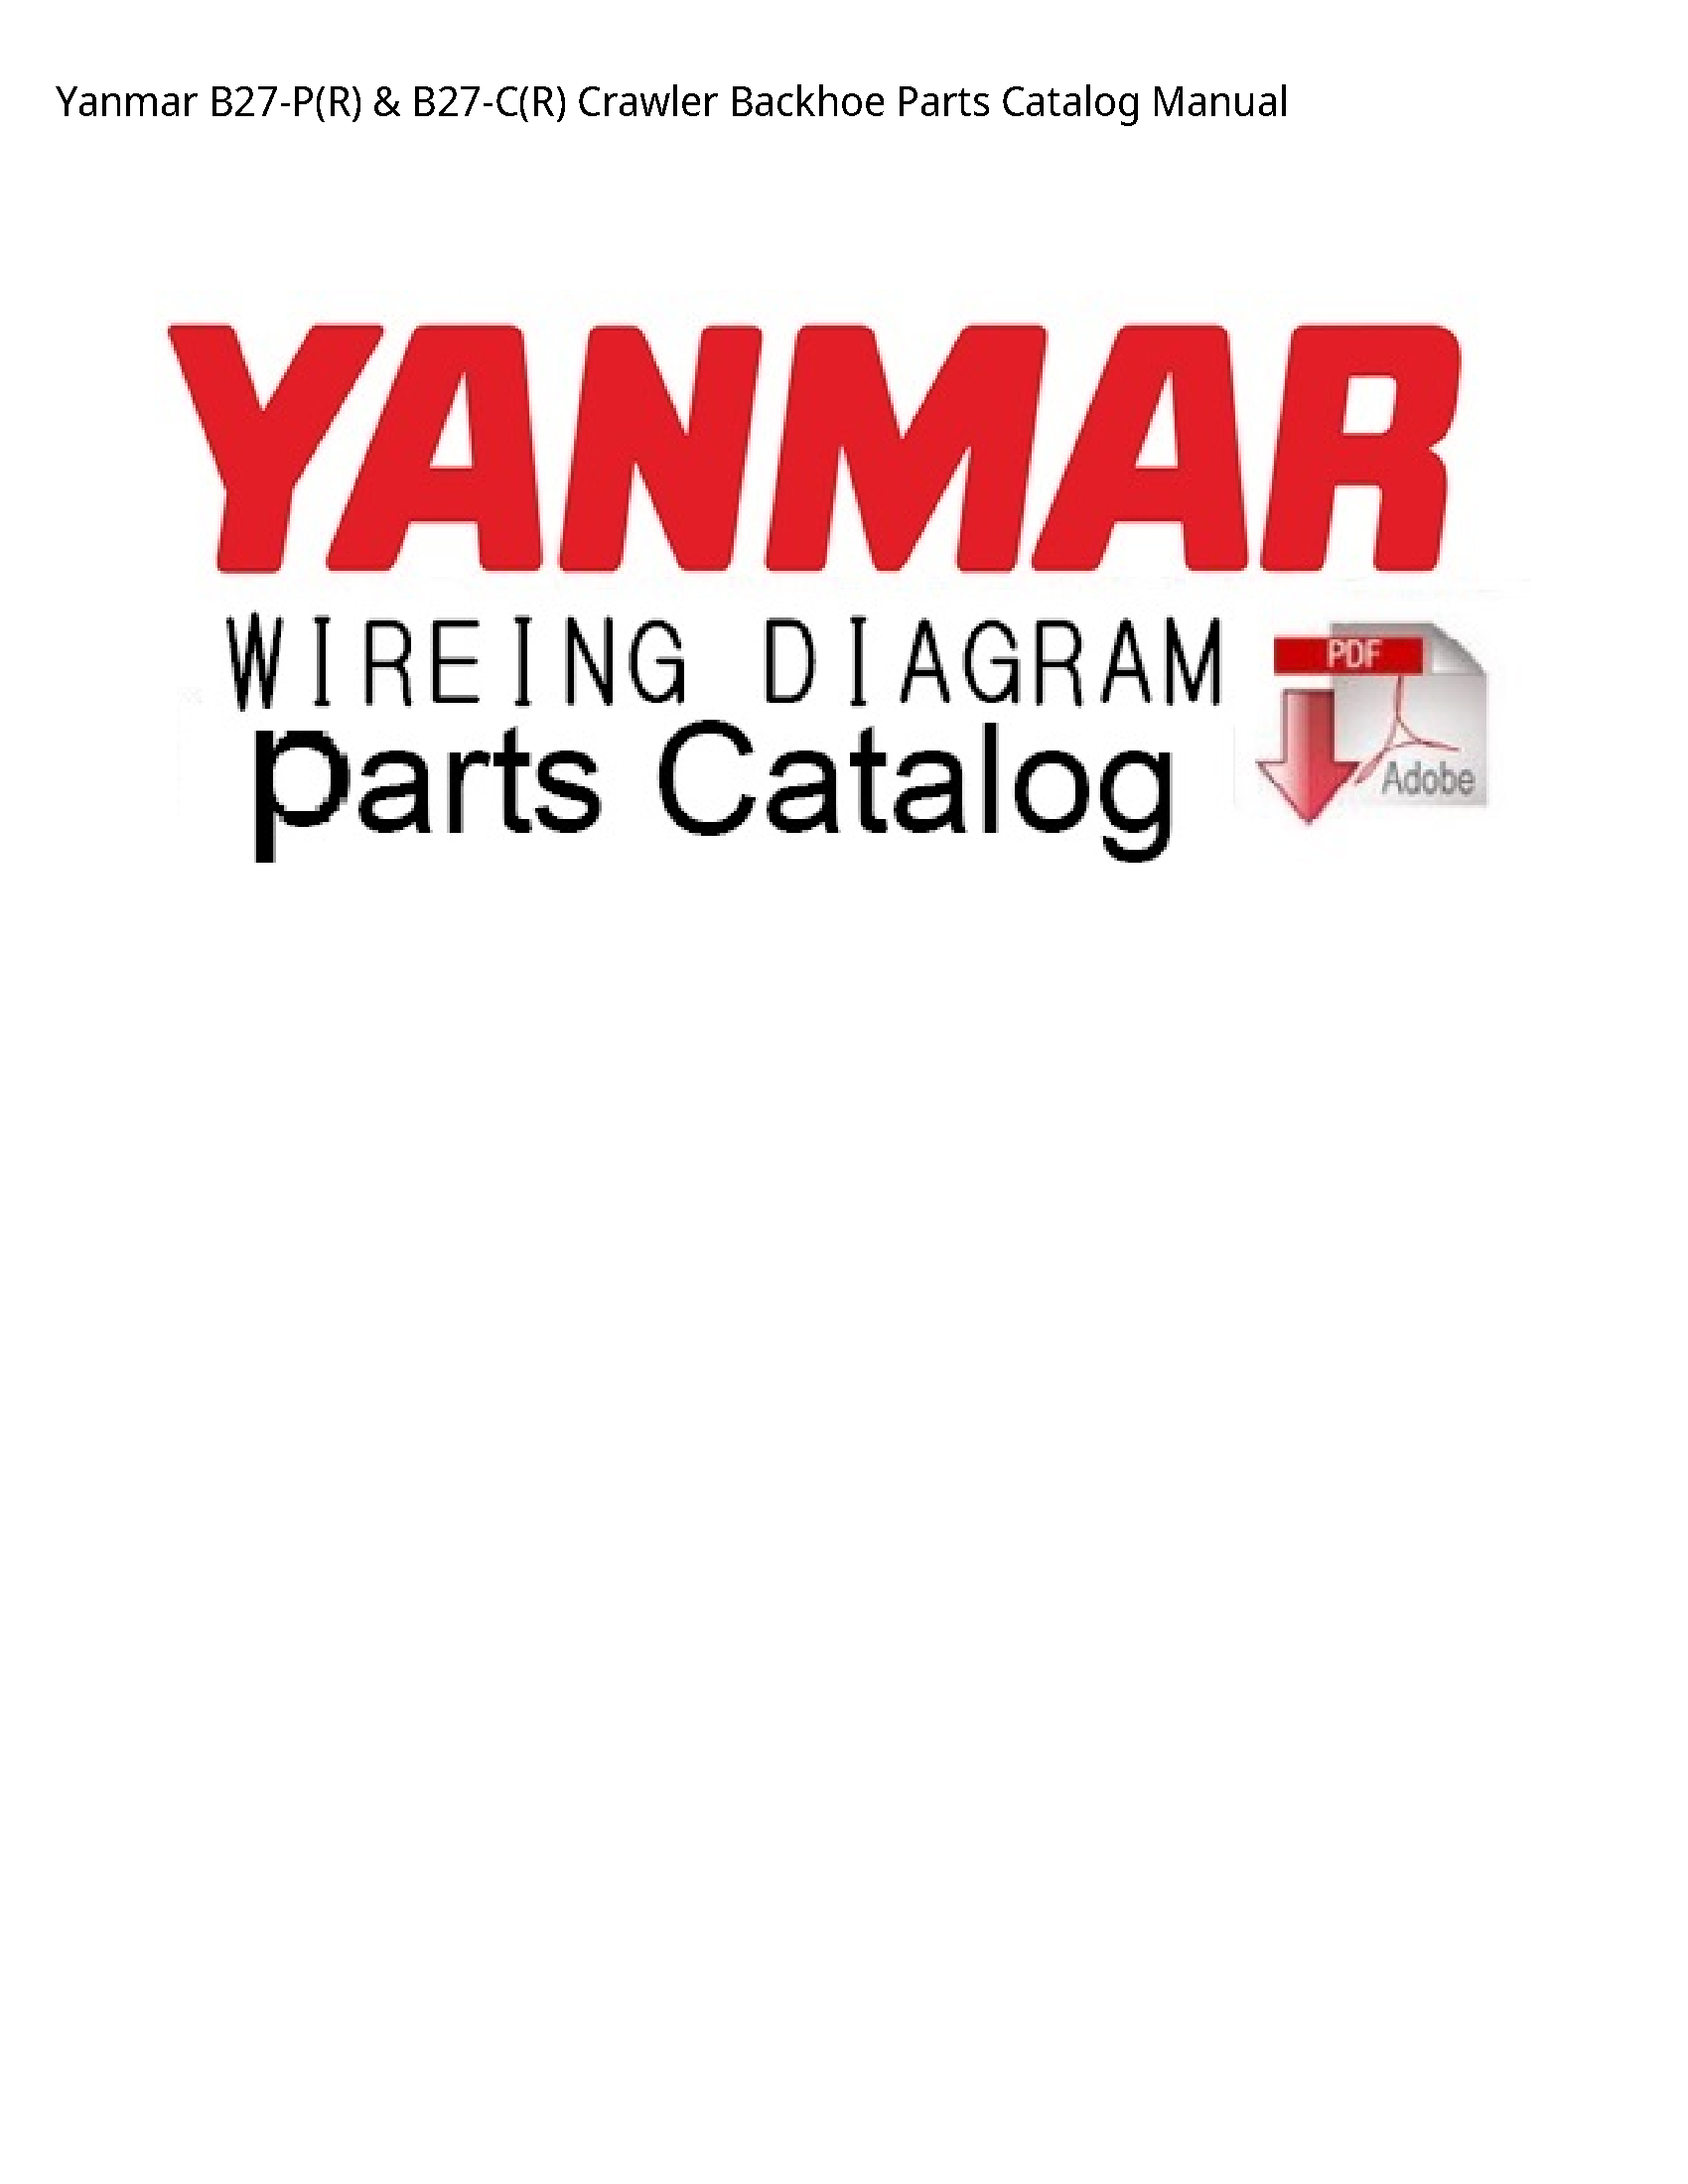 Yanmar B27-P(R) Crawler Backhoe Parts Catalog manual